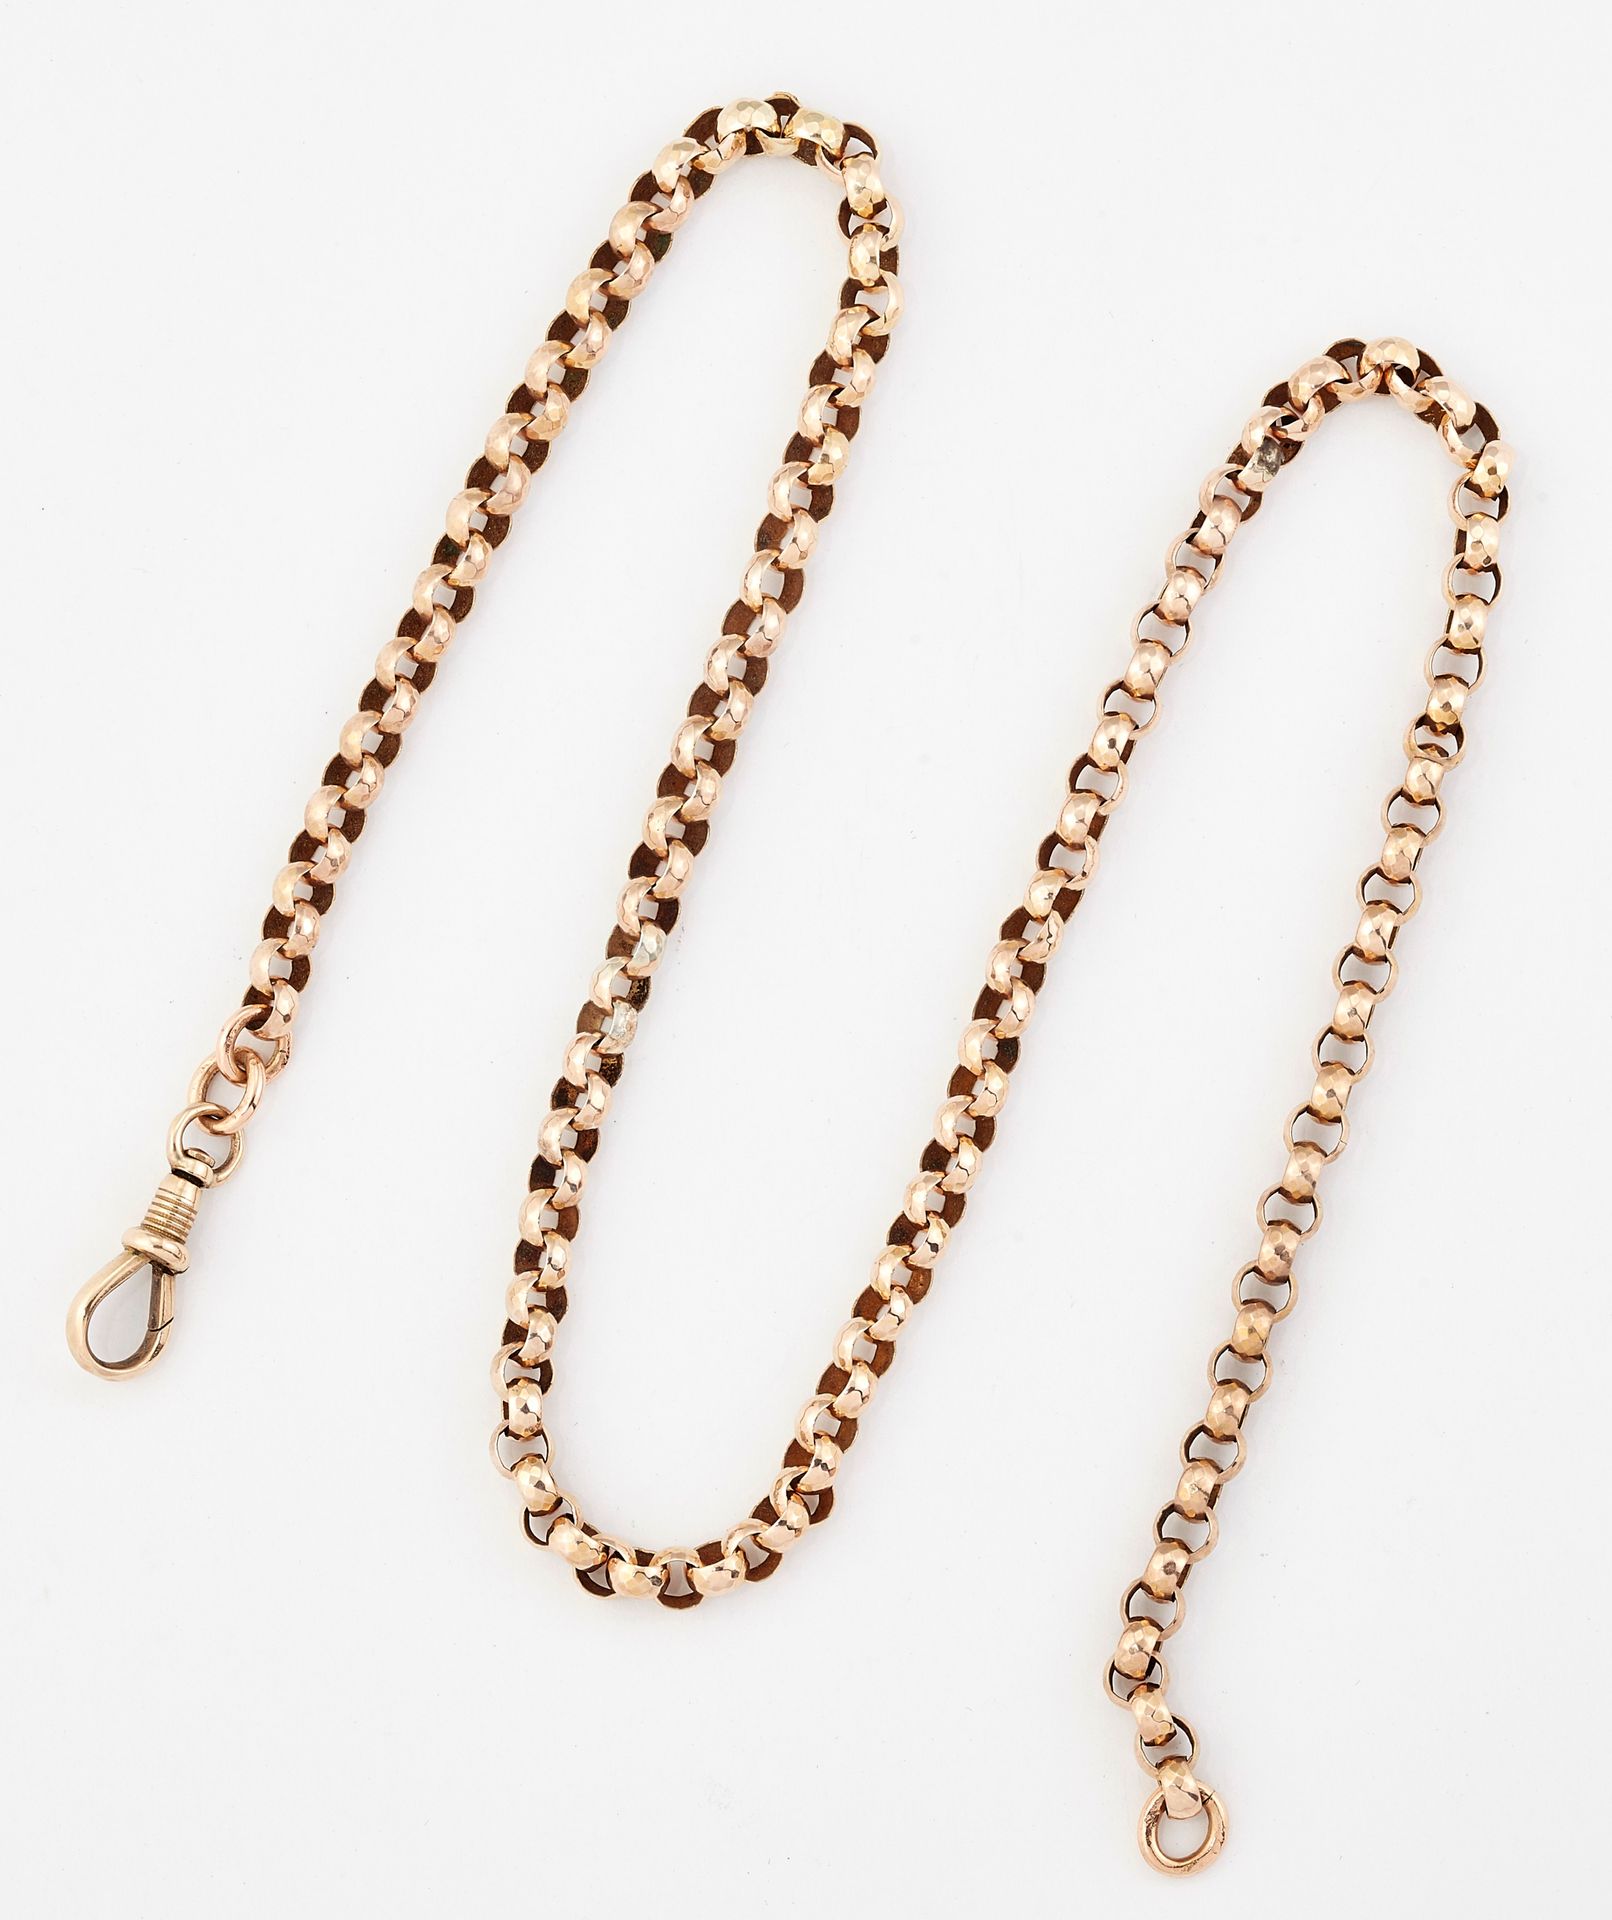 Null 一条维多利亚时期的项链，由刻面的Belcher链节组成，带夹子。长44厘米，重11.6克15020090它没有标记或邮票，但在我们看来可以测试为黄金。